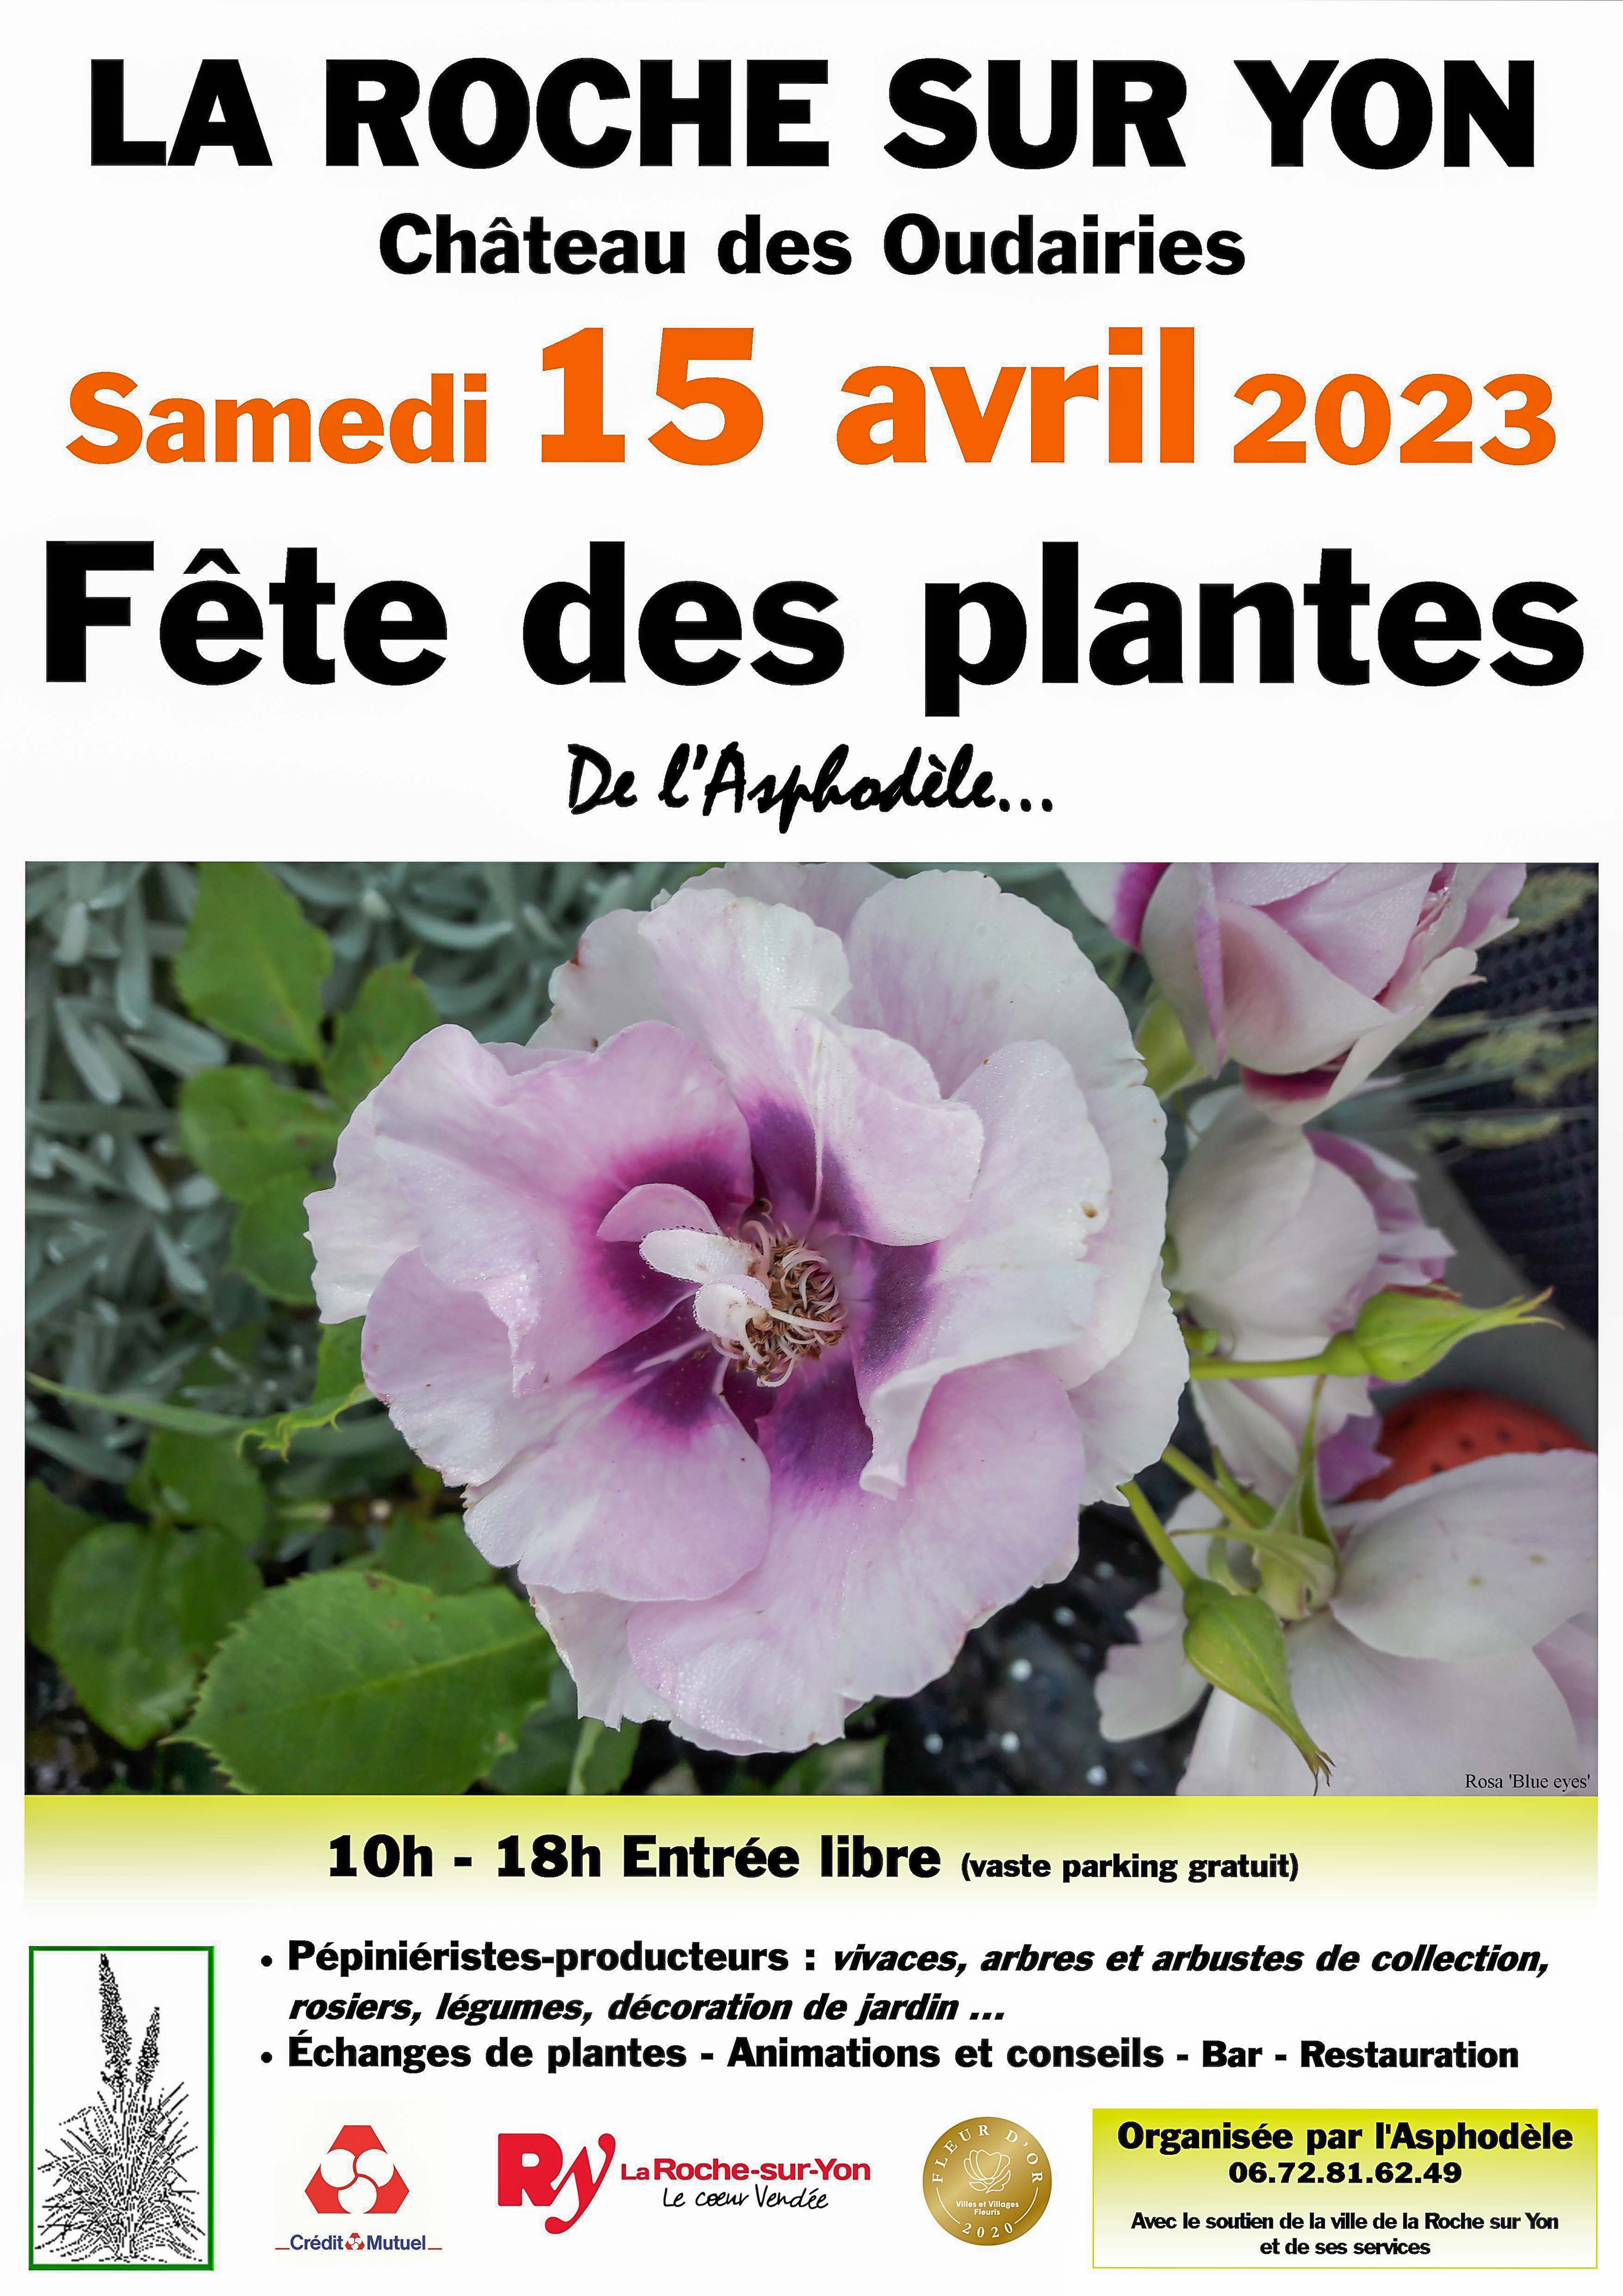 Fête des plantes 2023 La Roche sur yon